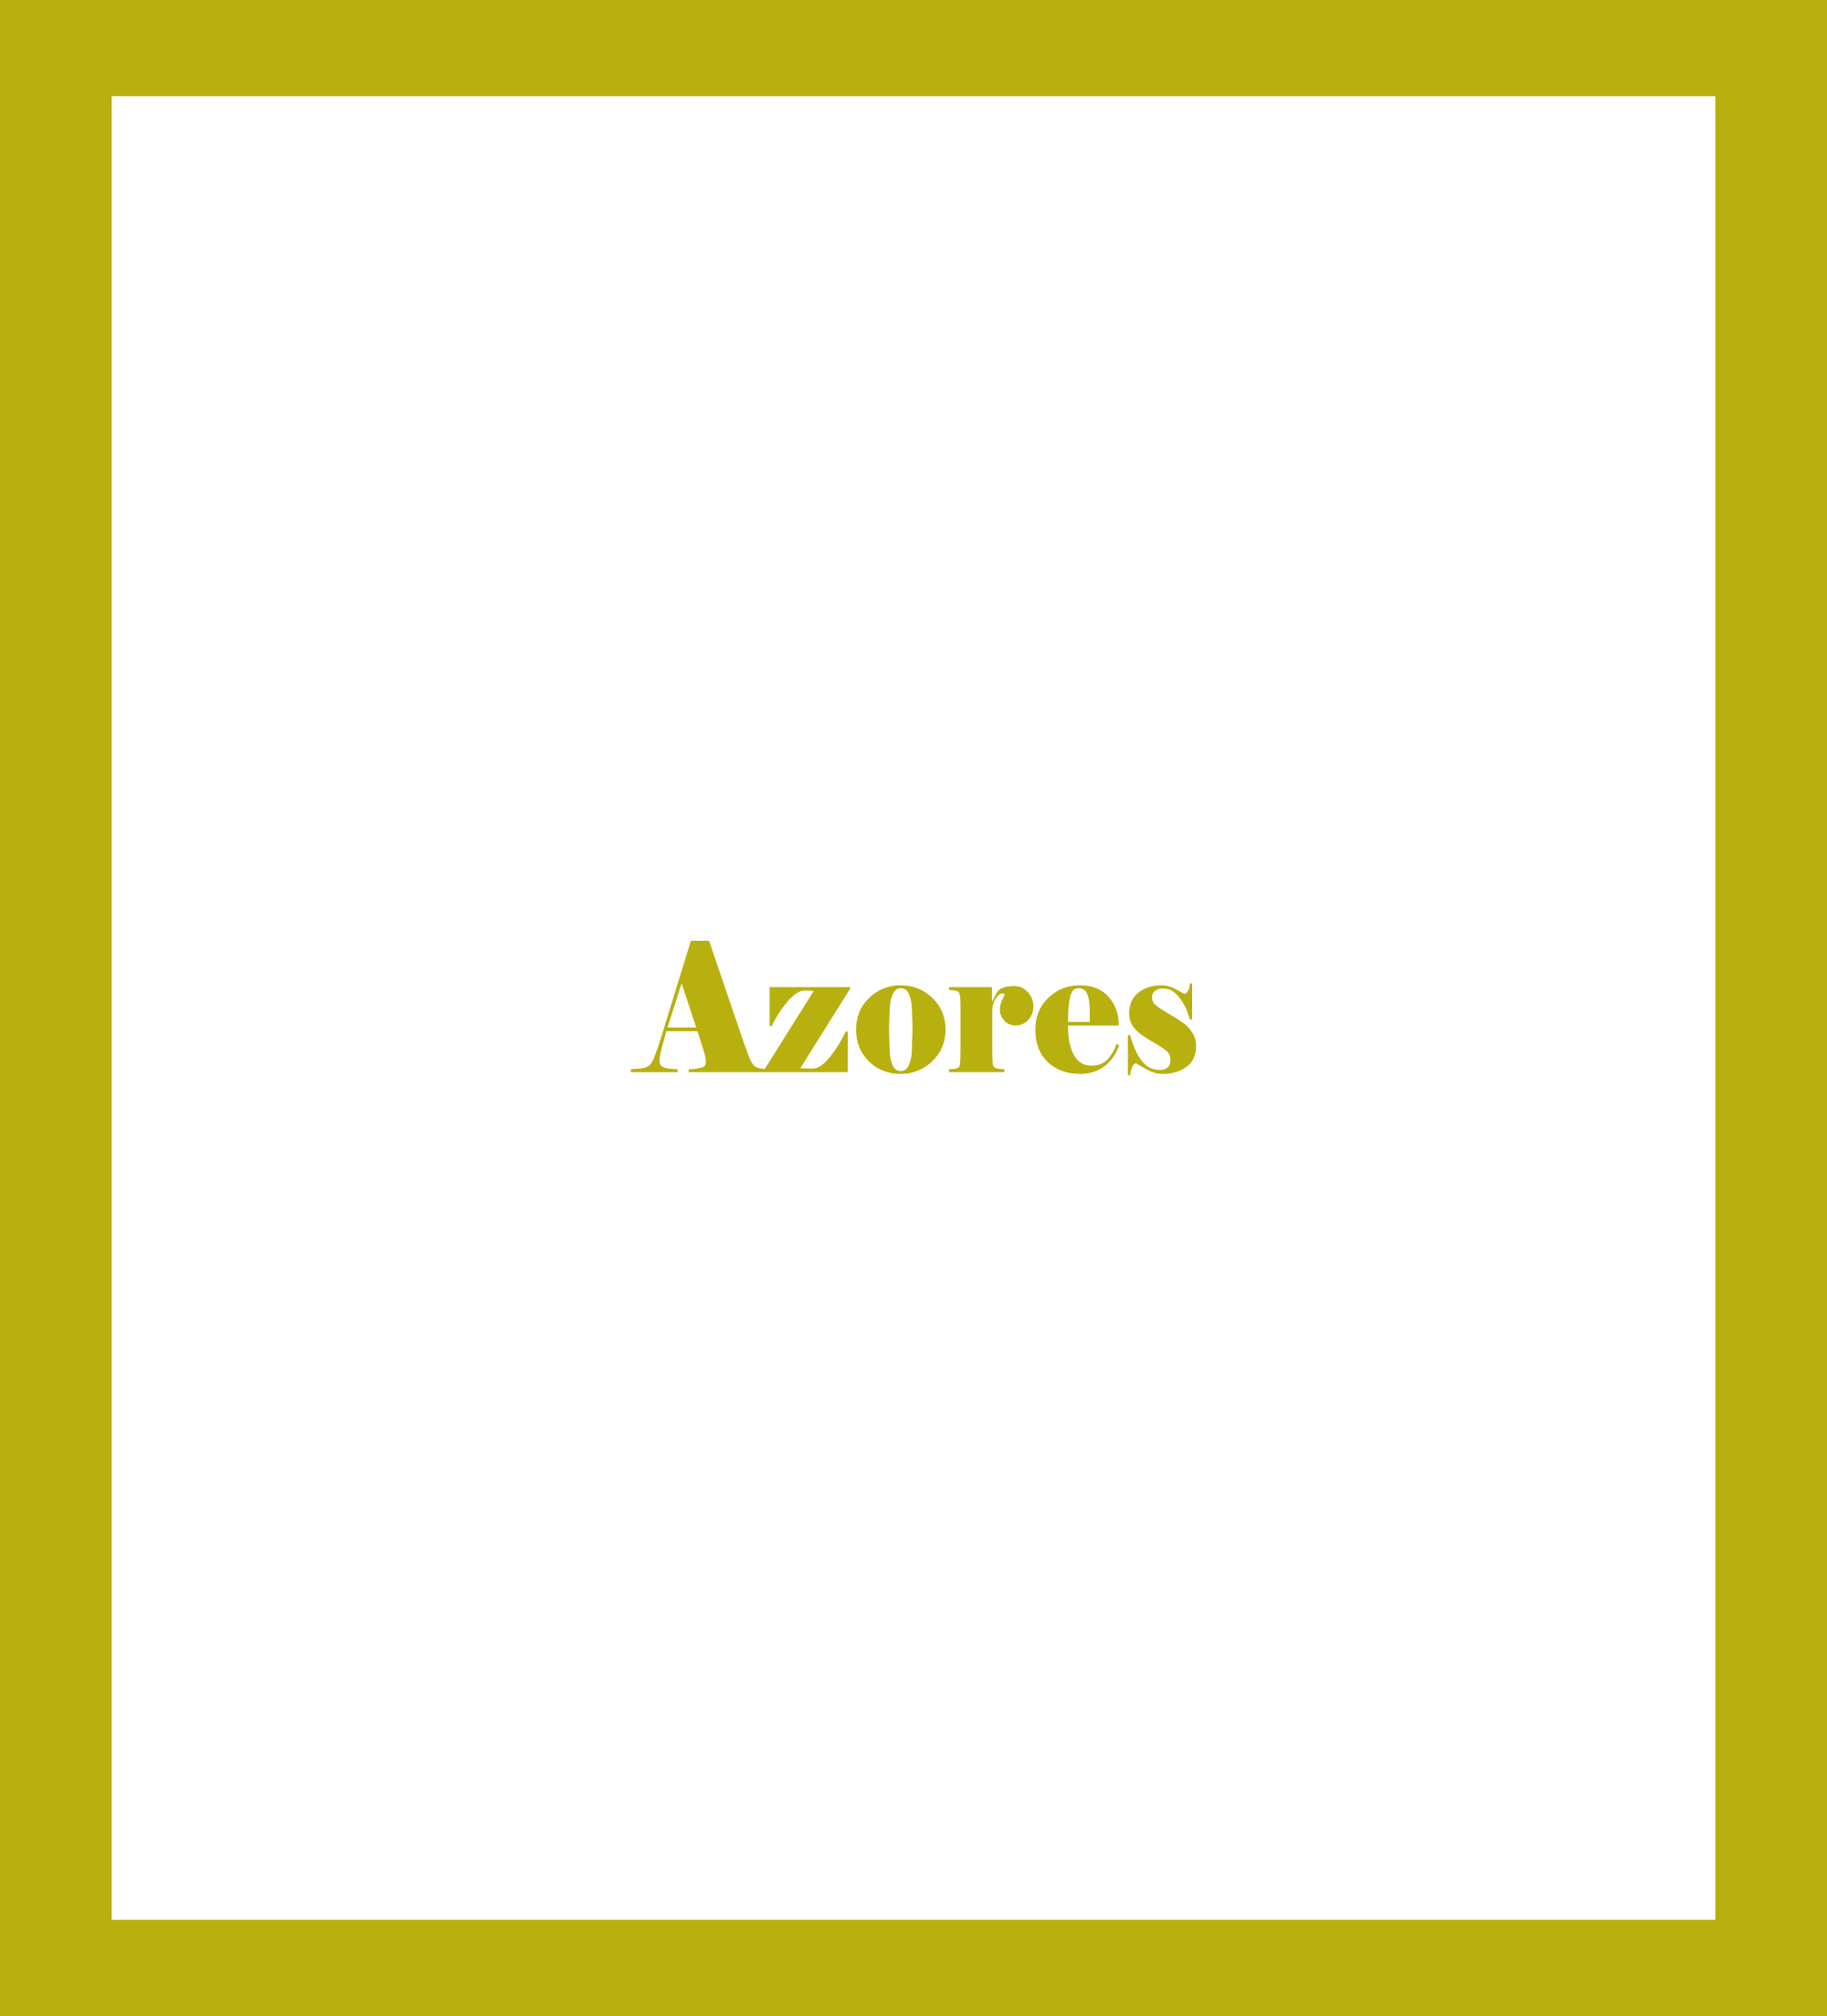 Las Azores